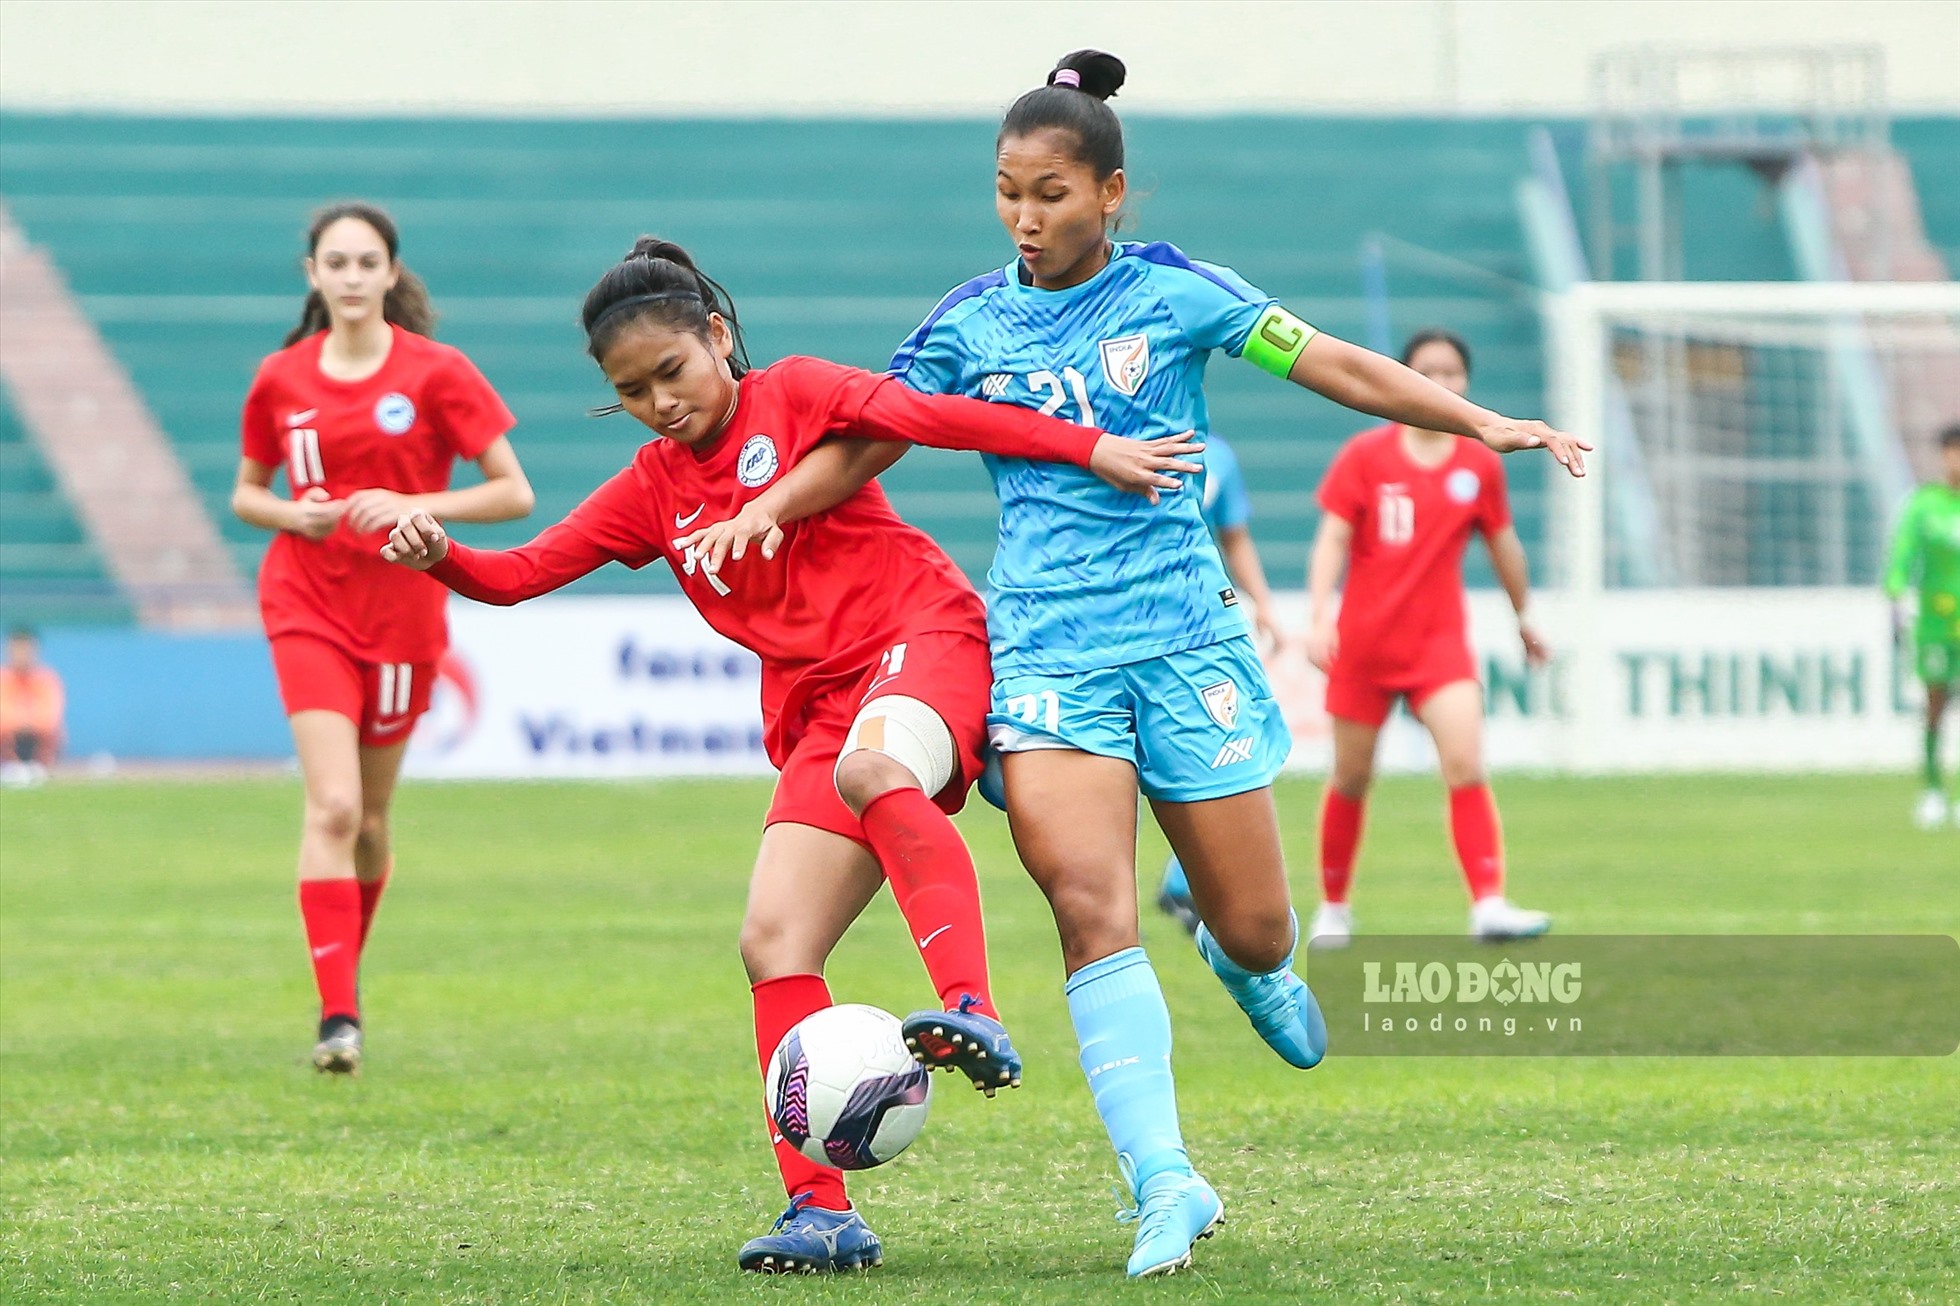 U20 nữ Ấn Độ (xanh) áp đảo thế trận và giành chiến thắng 7-0 trước U20 nữ Singapore. Ảnh: Minh Quân